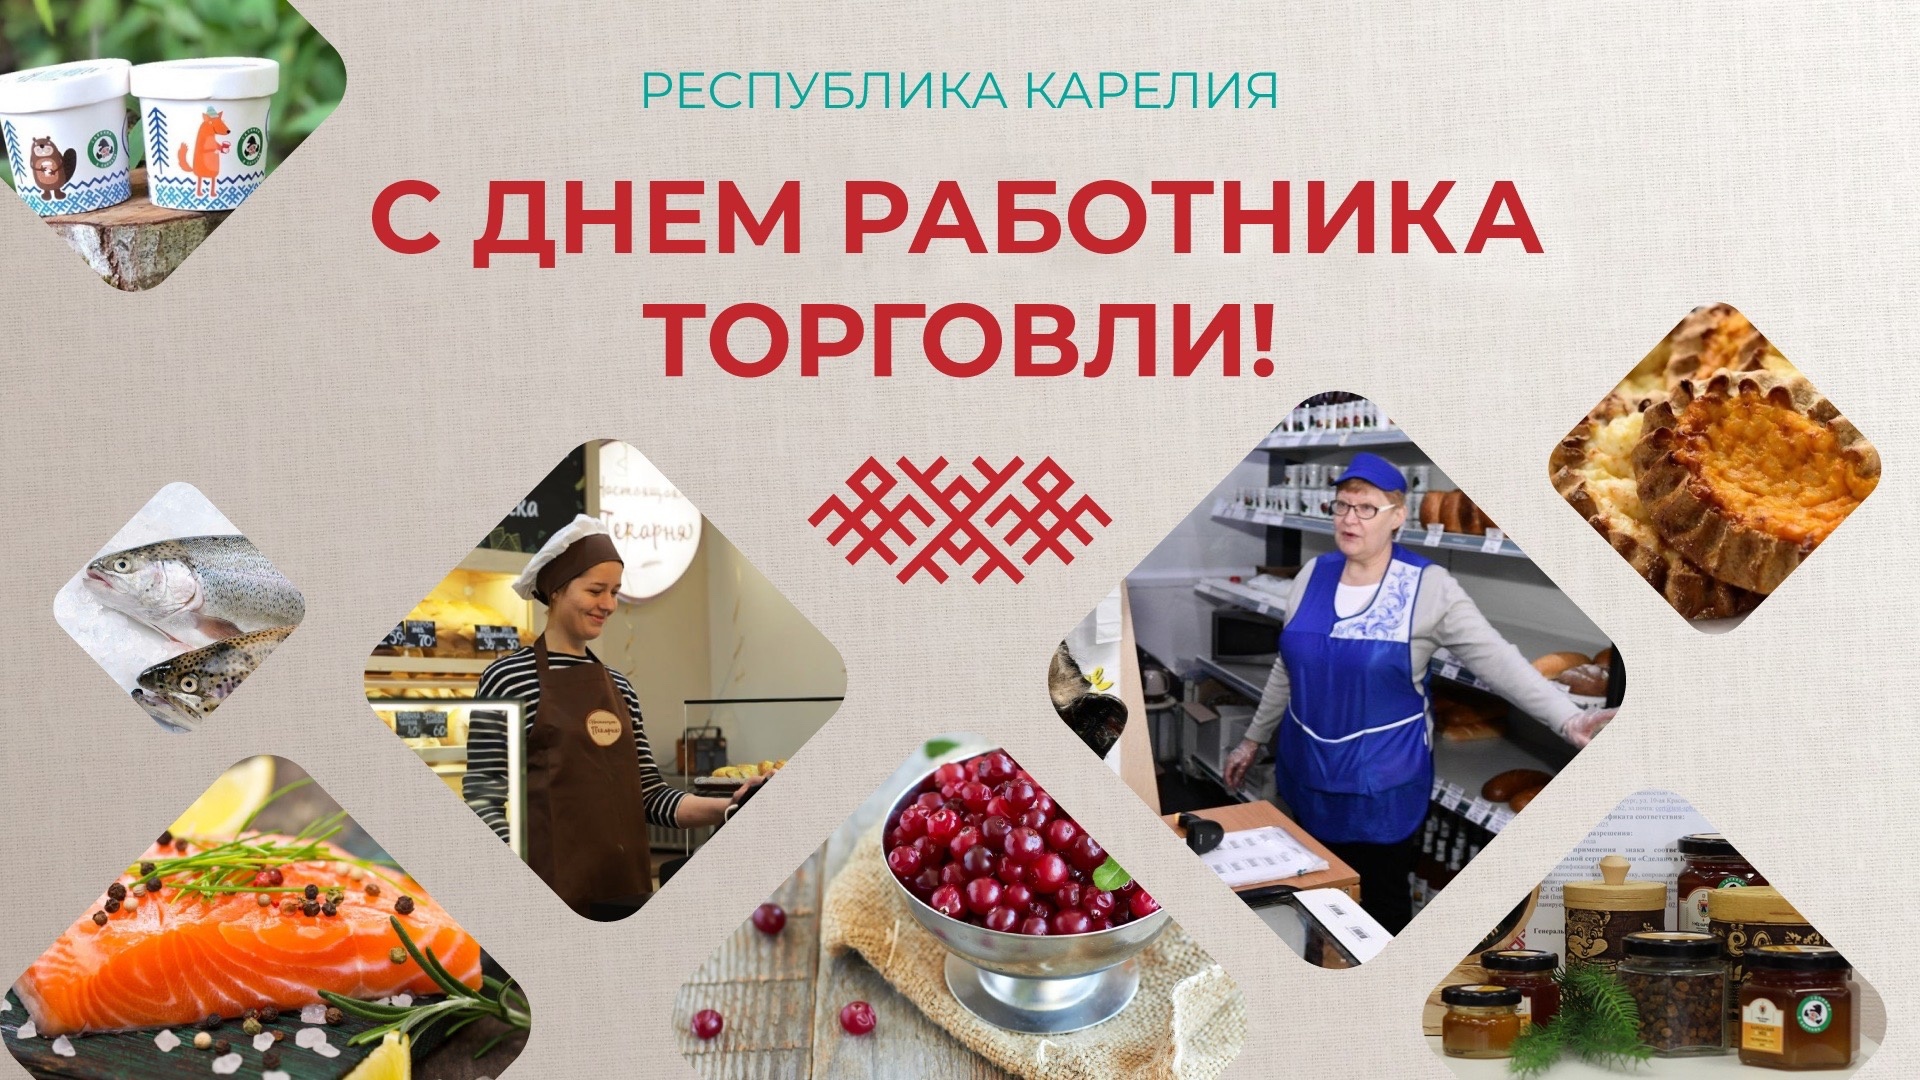 «Будем приходить к вам за хорошим настроением!»: губернатор Карелии поздравил работников торговли 